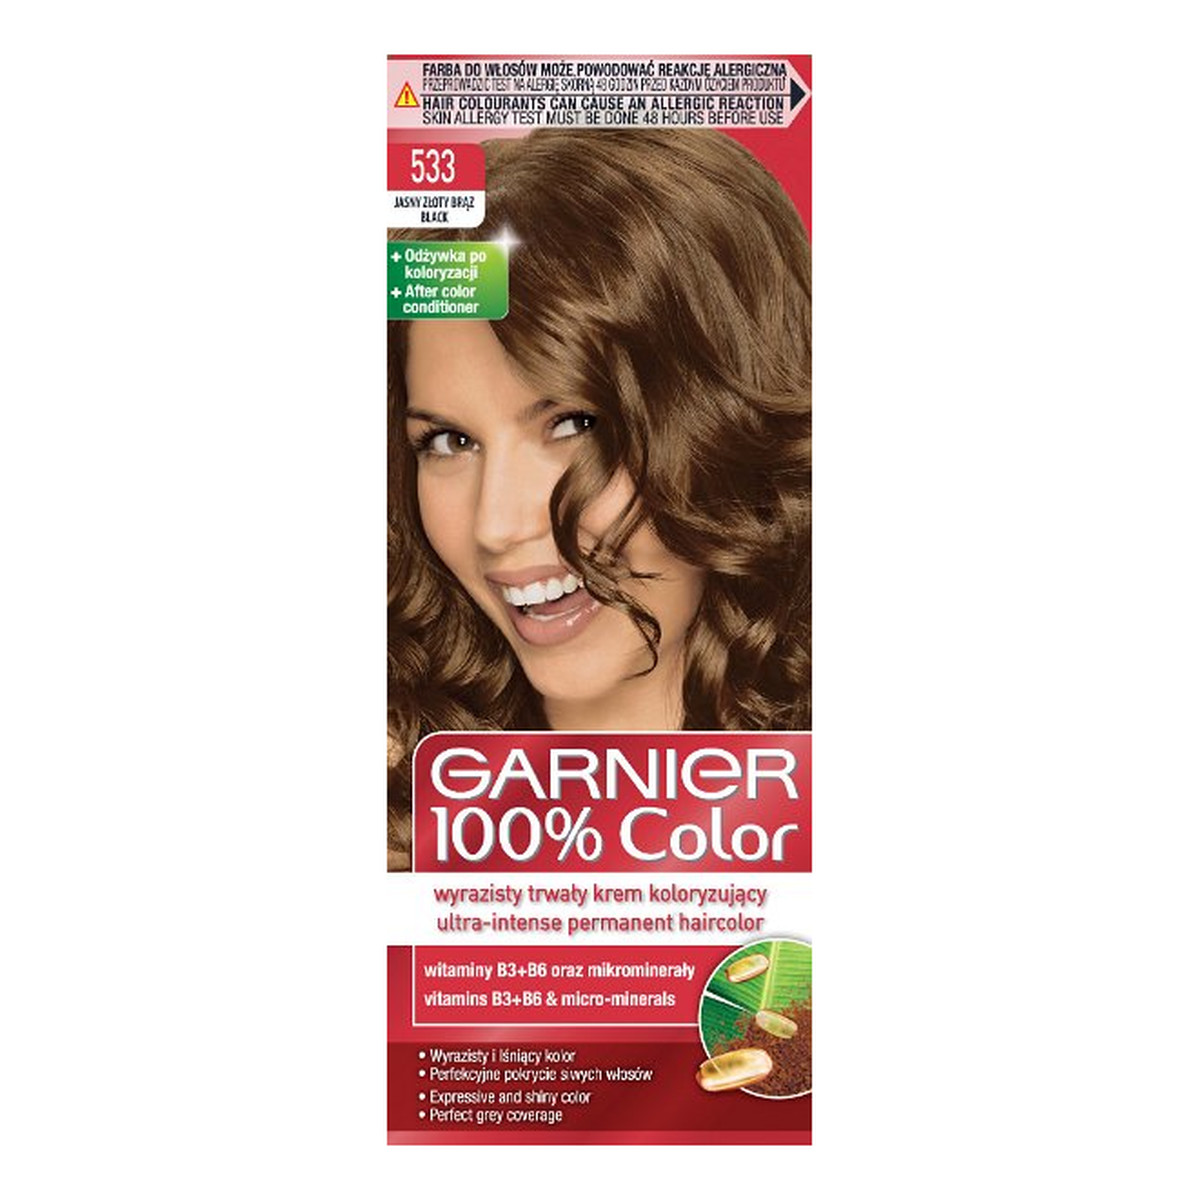 Garnier 100% Color Farba Do Włosów w Kremie 110ml